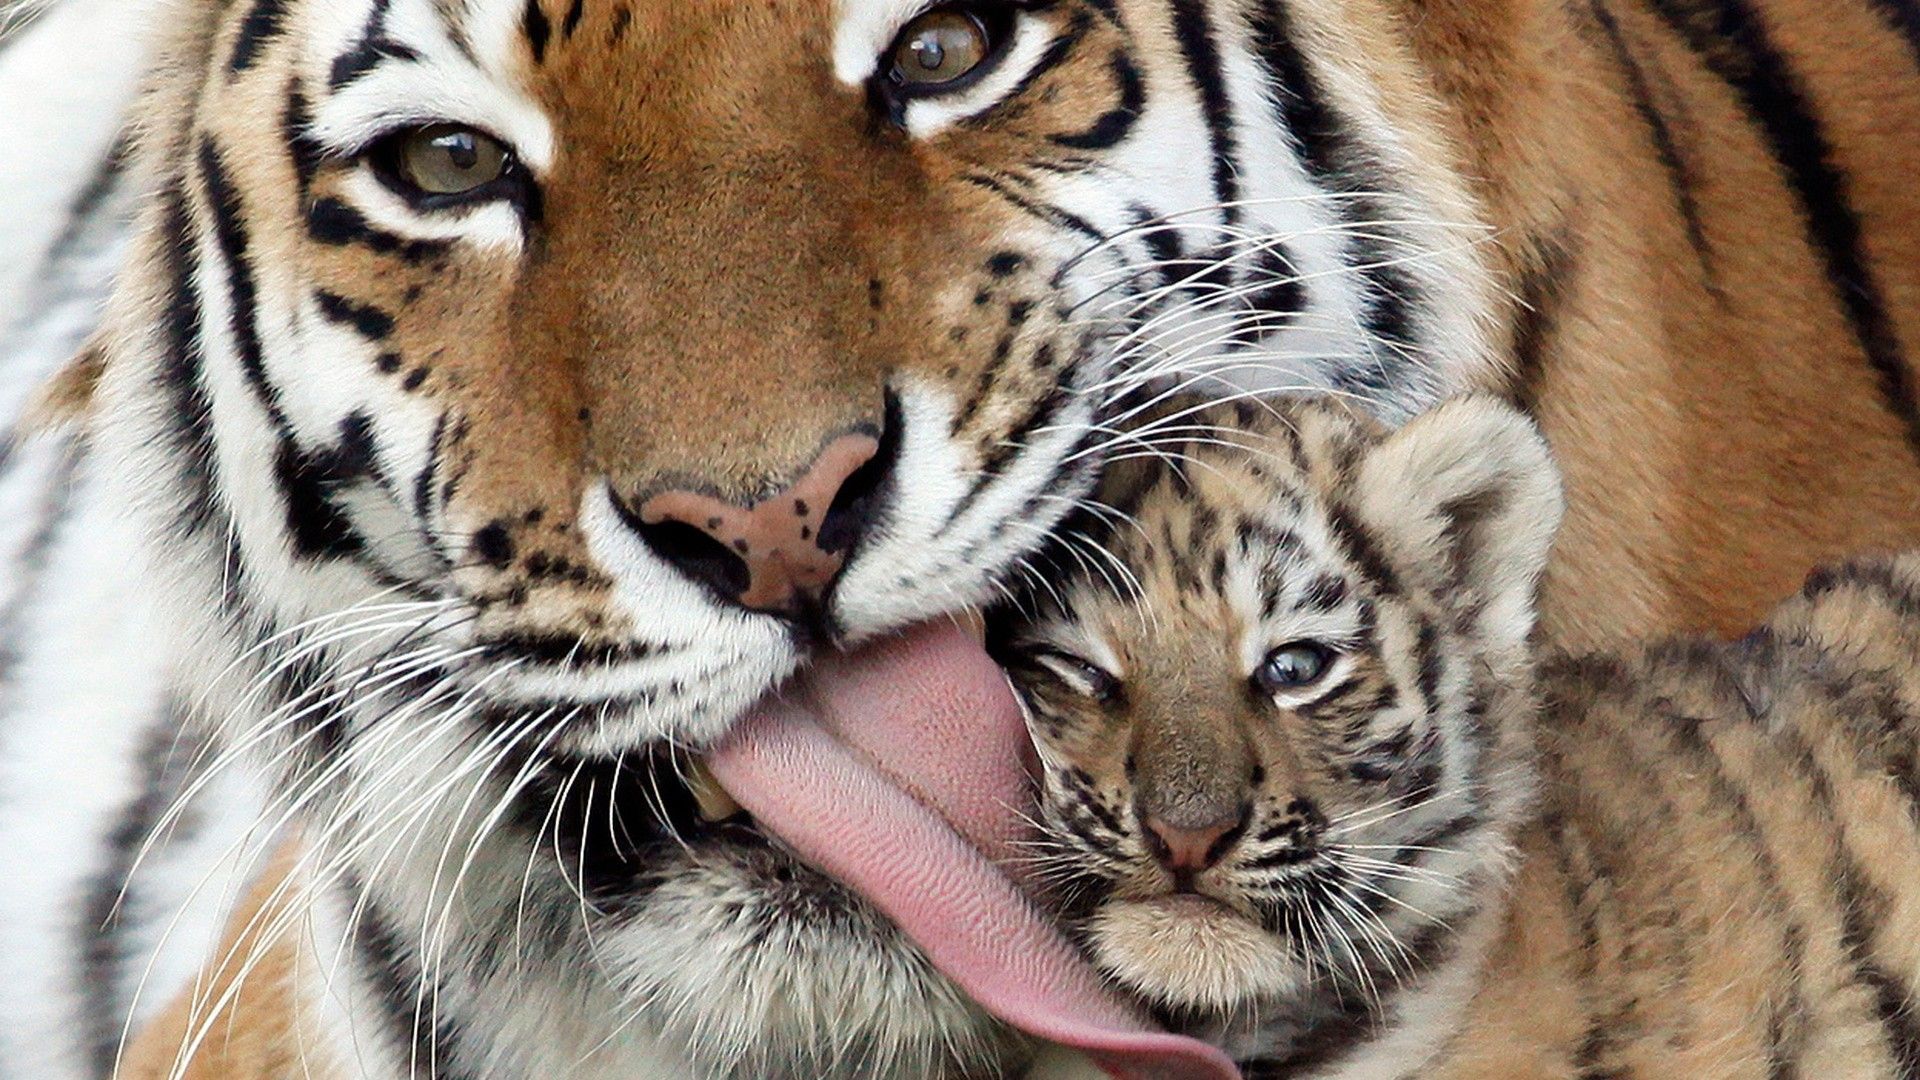 Cute tigers - mom and cub - 1920x1080 - Full HD 16/9 - Wallpaper ...